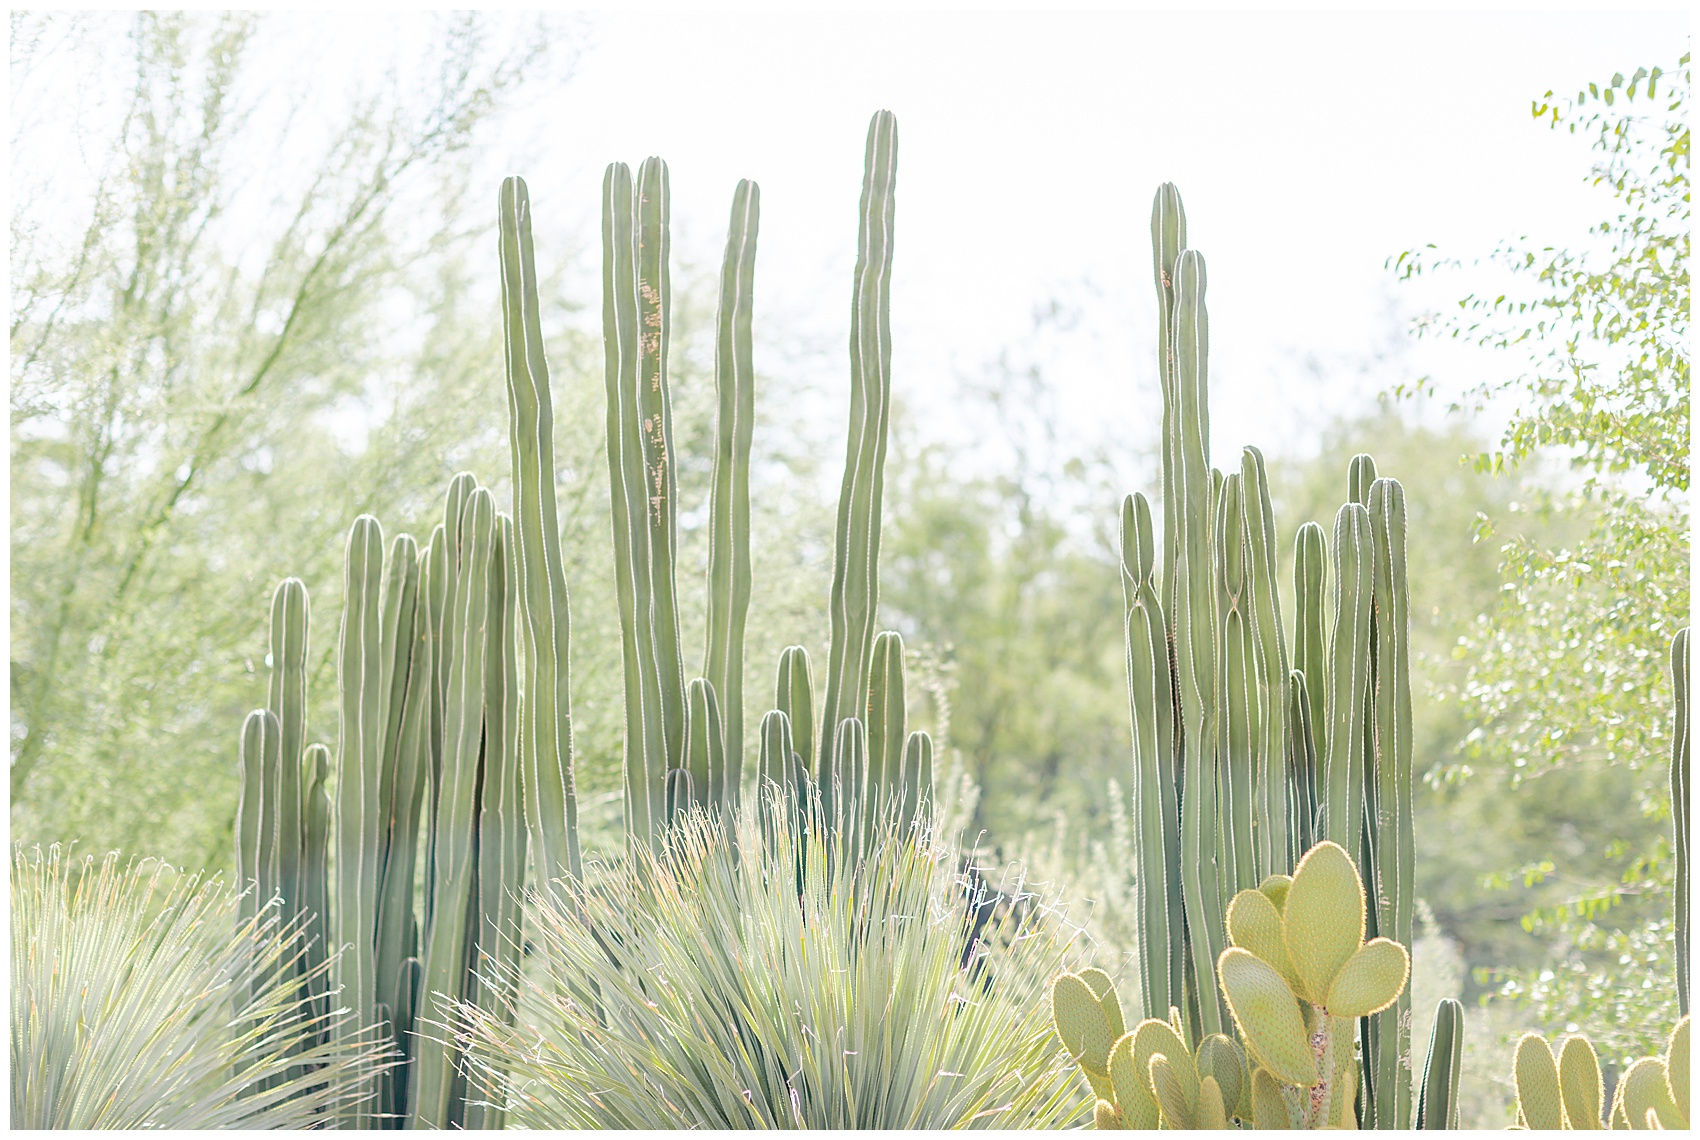 Cacti in the desert botanical gardens